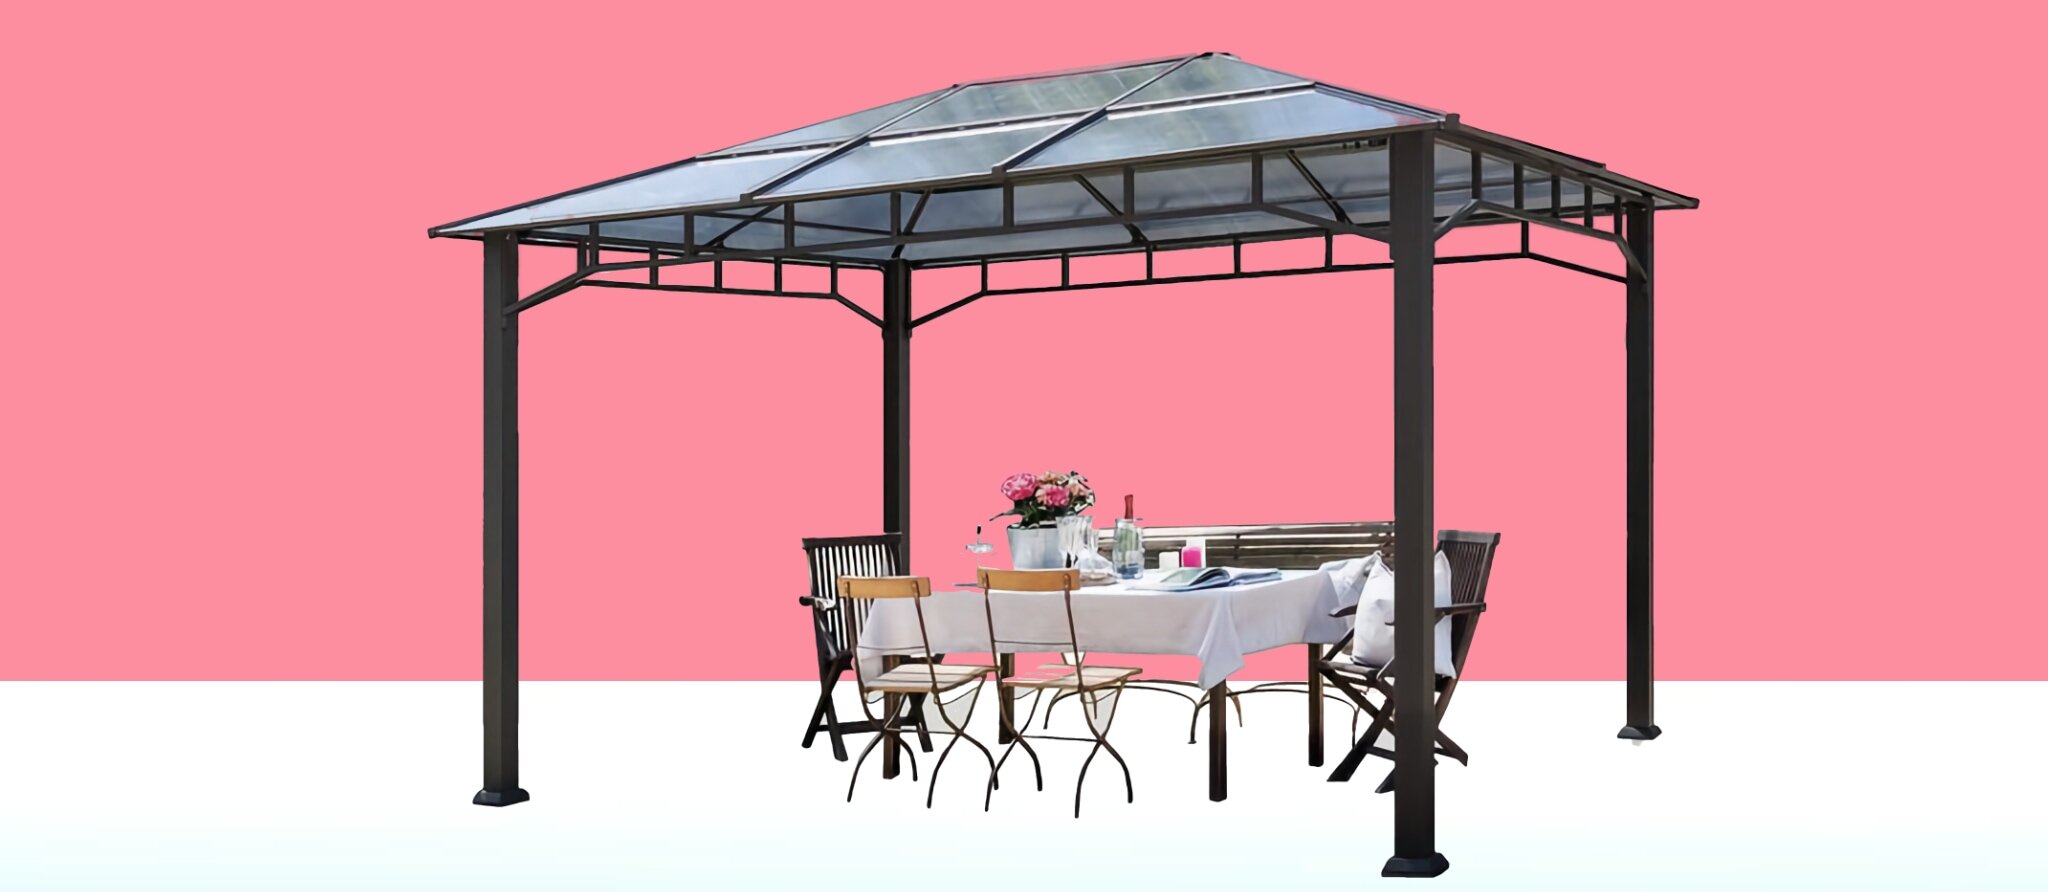 Gartenpavillon aus Aluminium statt Sonnenschirm